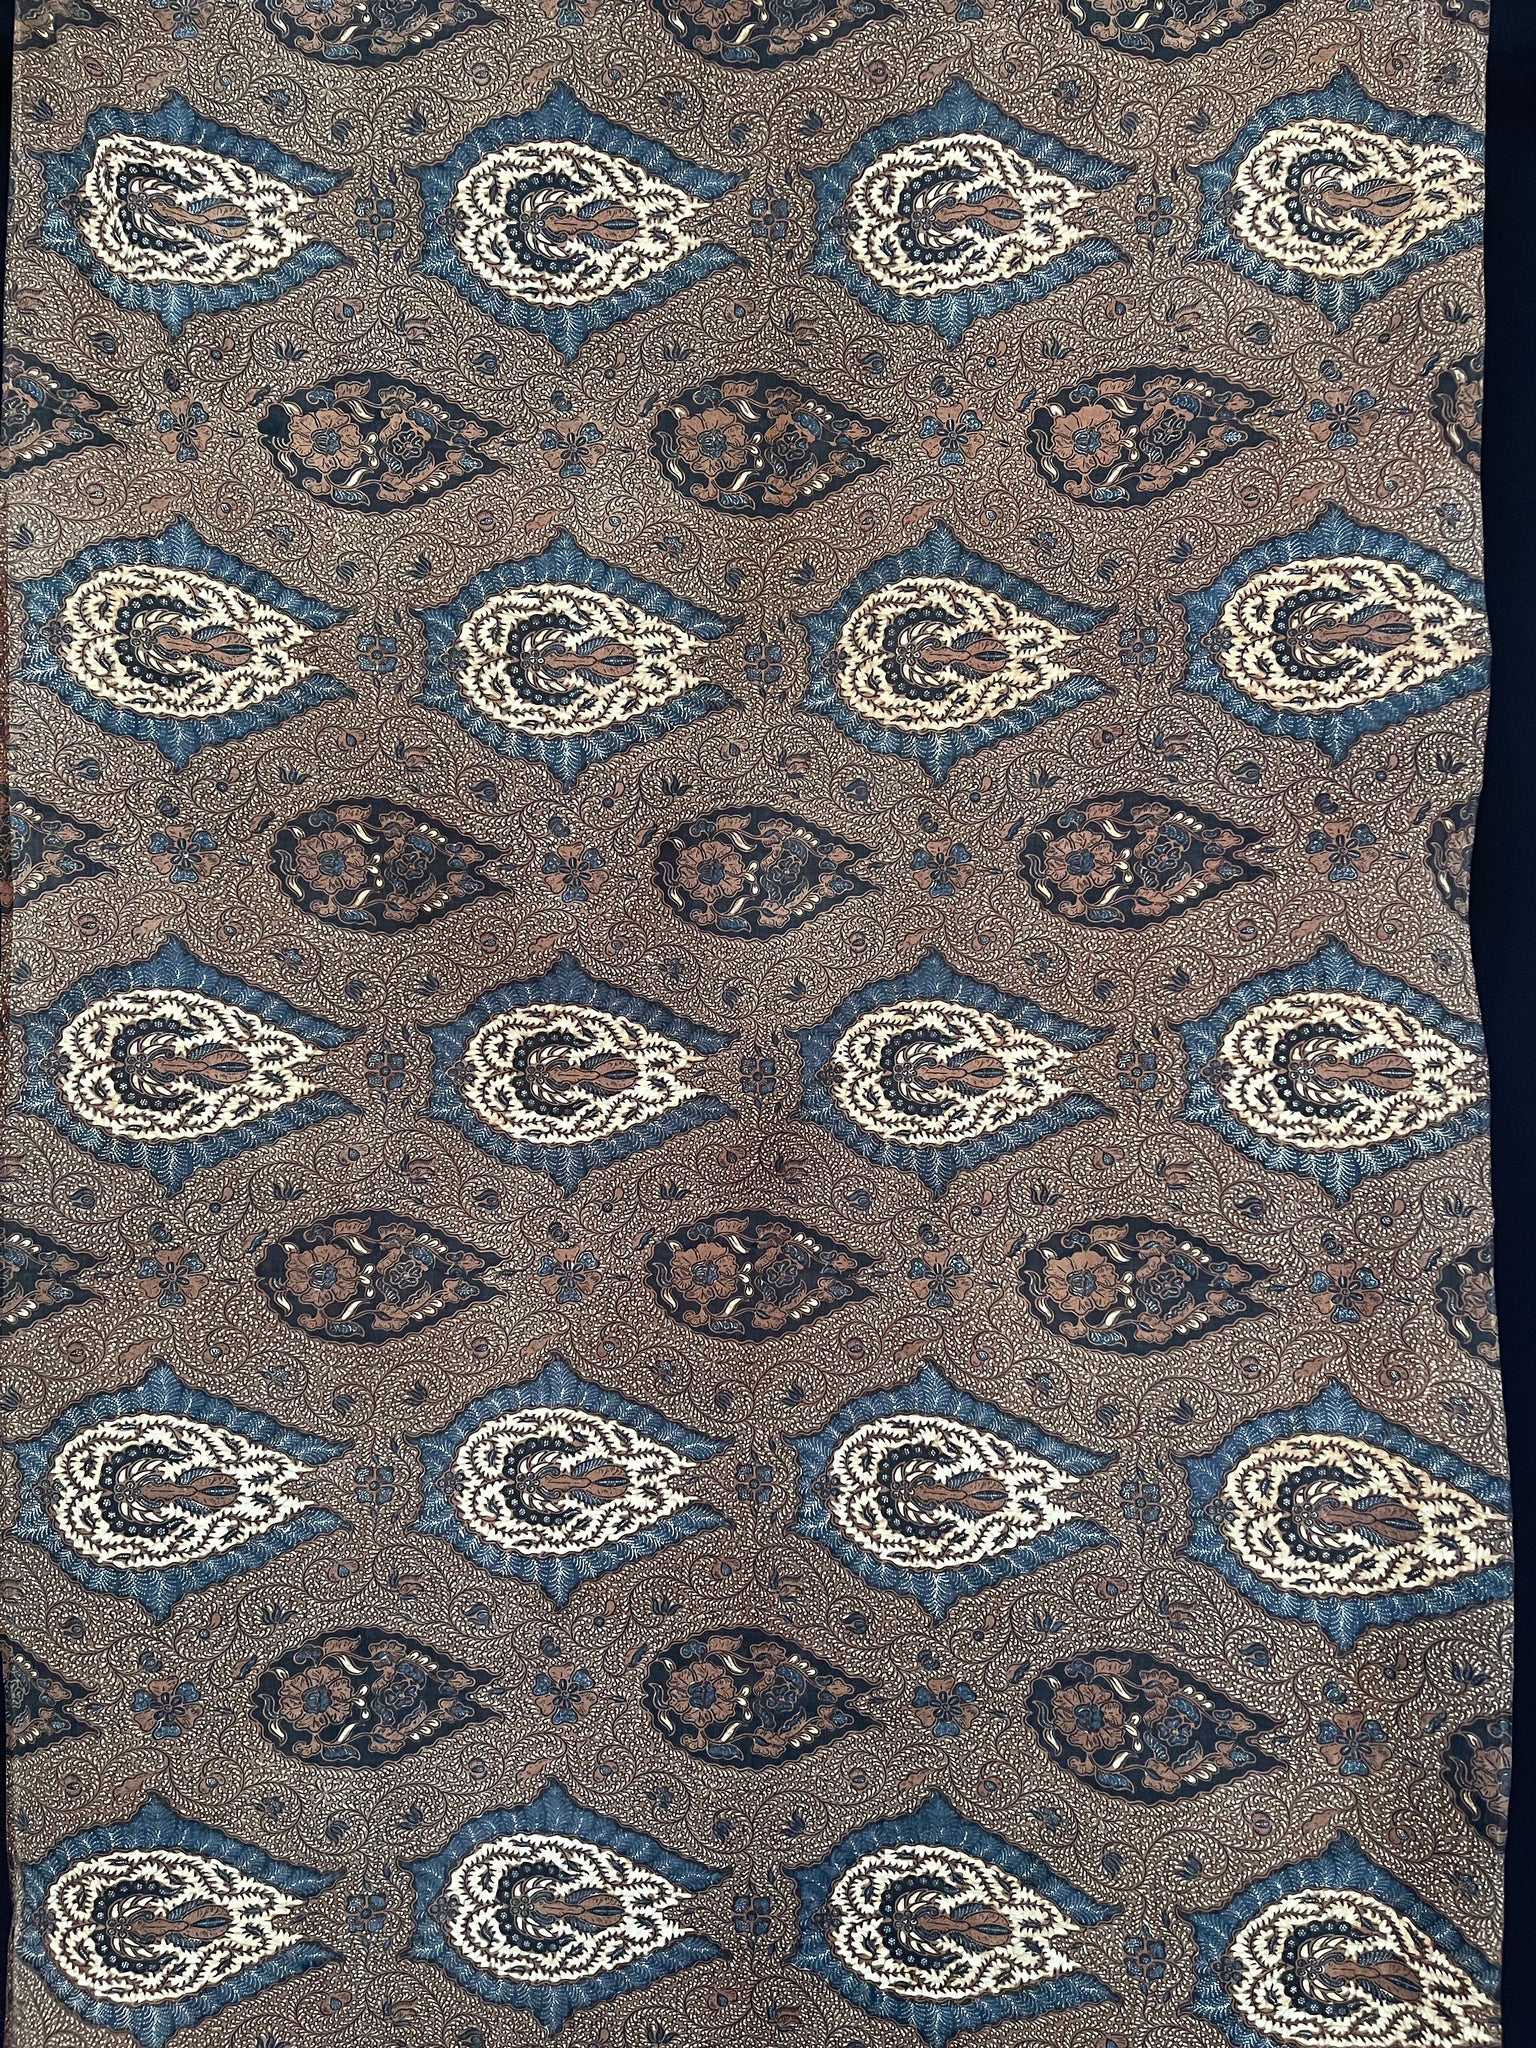 Fine Batik Skirt Panel or Sarong: C19th Java